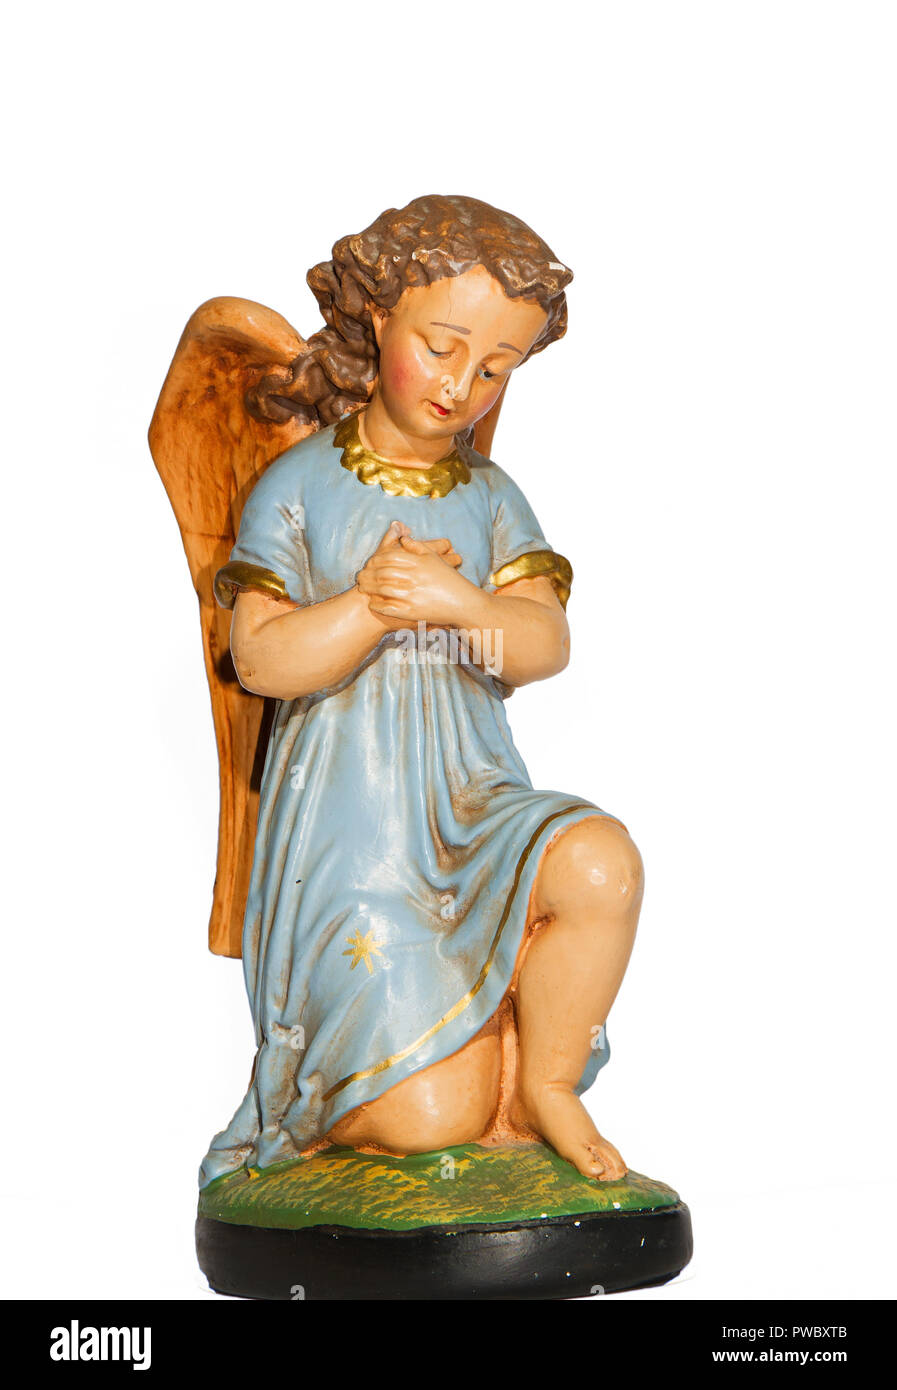 Ange en prière avec robe bleue, gypse, statue en plâtre de et peint à la main, isolé sur fond blanc Banque D'Images